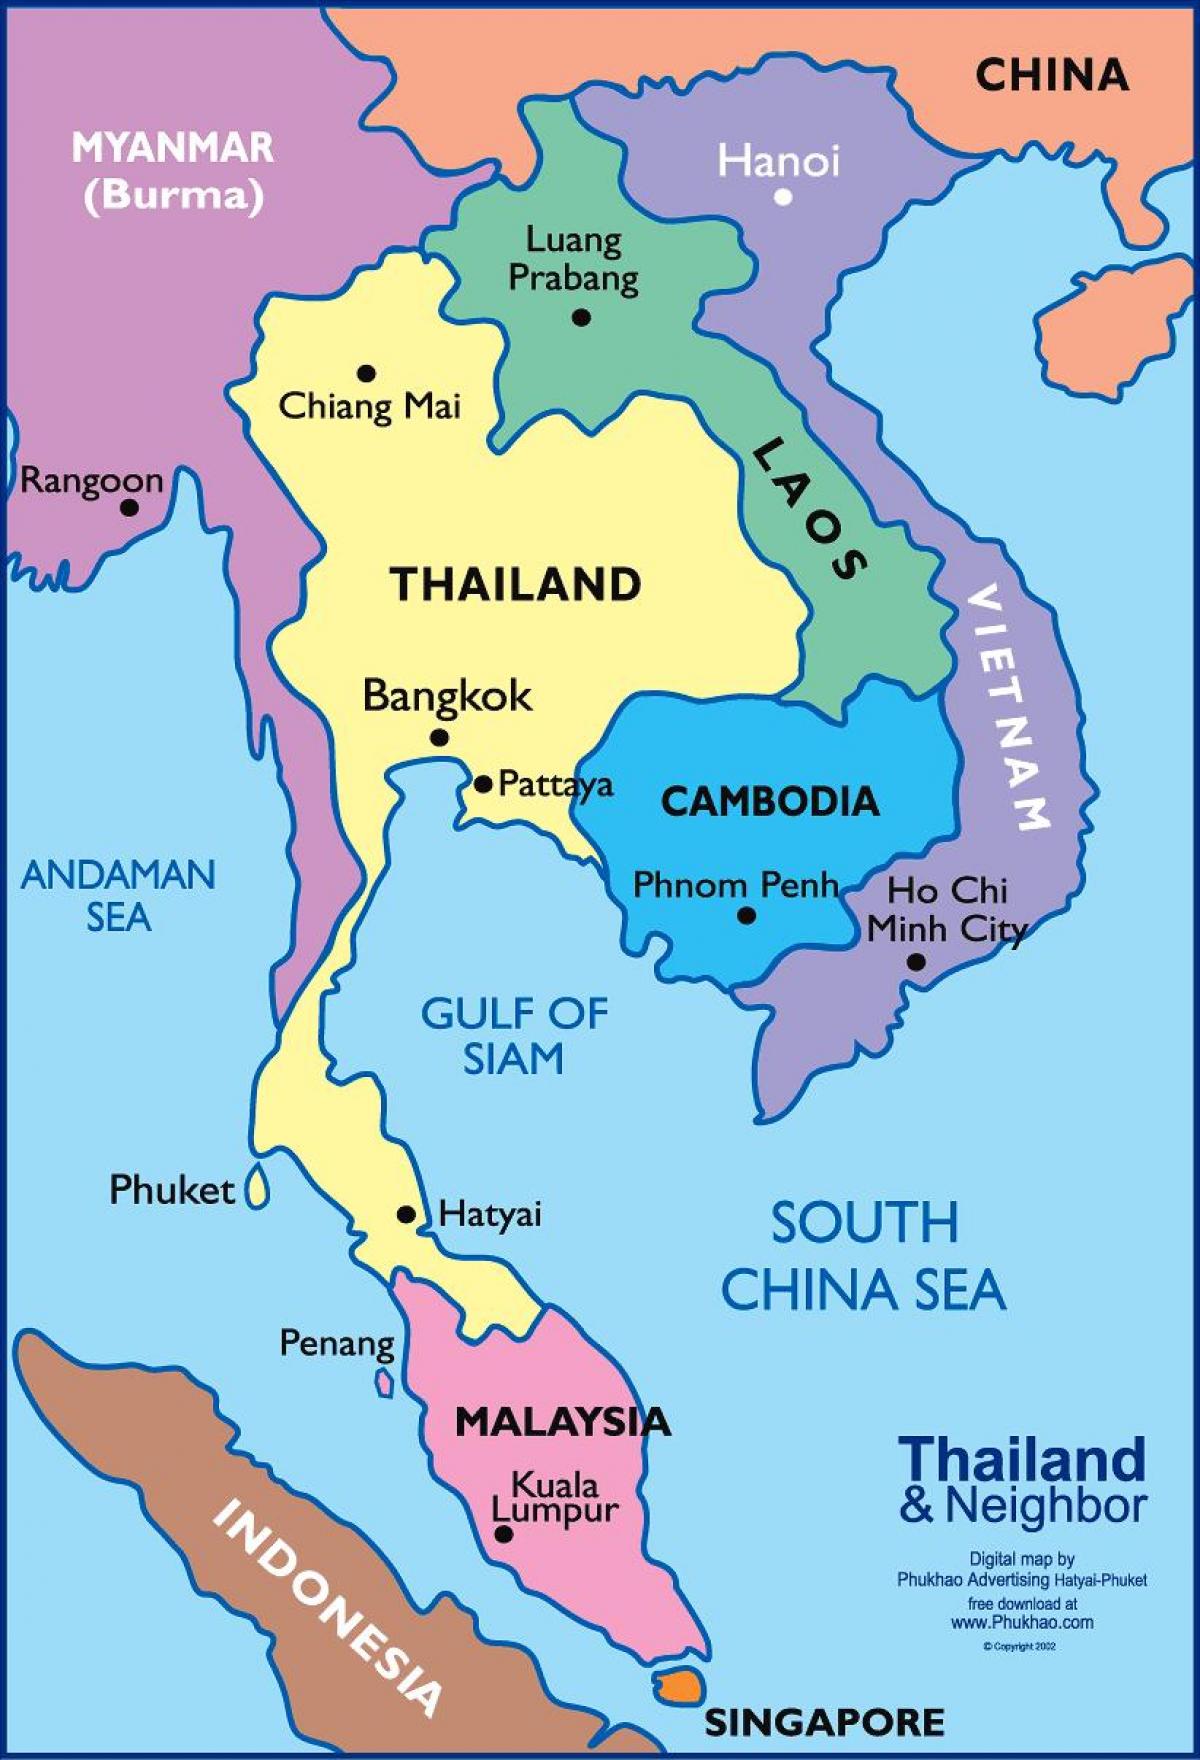 քարտեզը Բանգկոկի, որտեղից